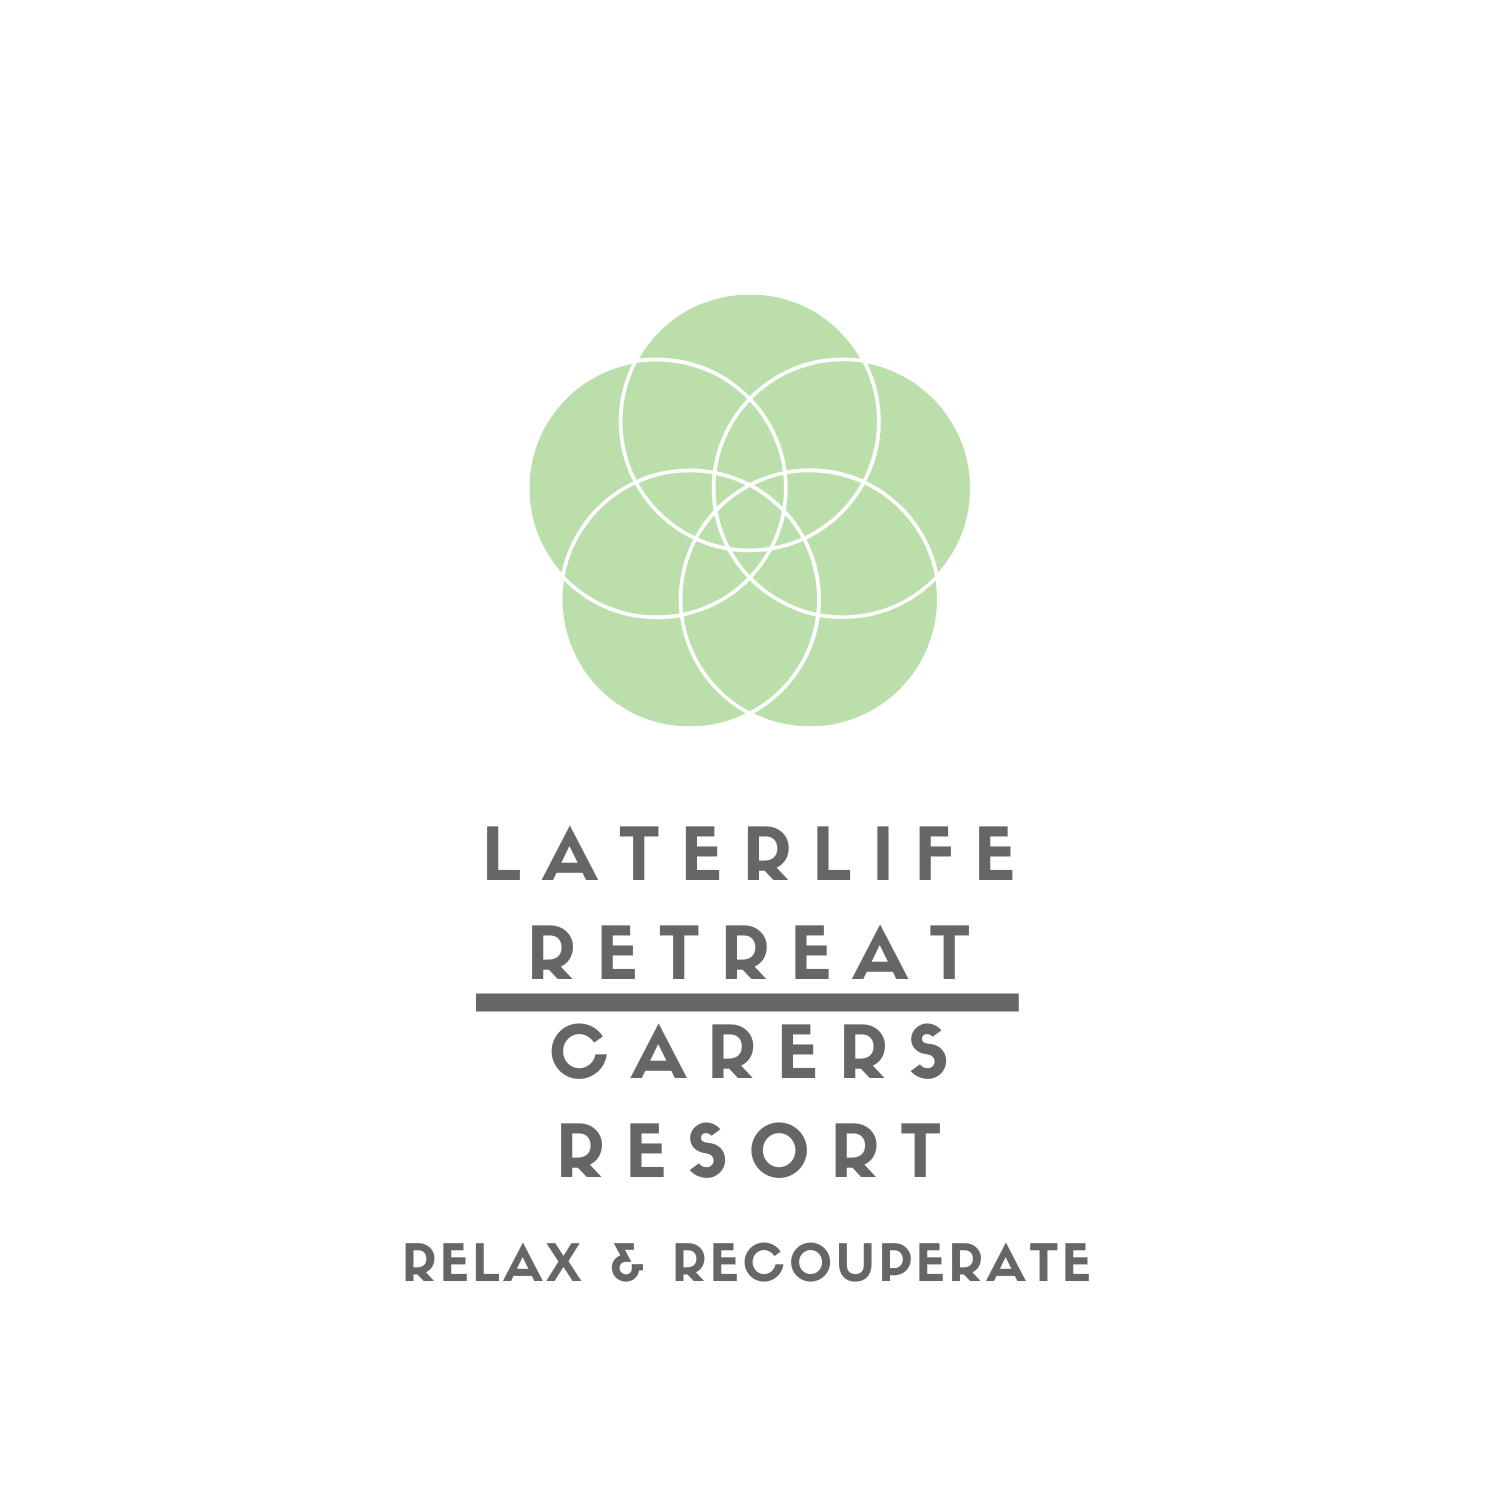 later life retreat & carers resort SIMPLE LOGO.png